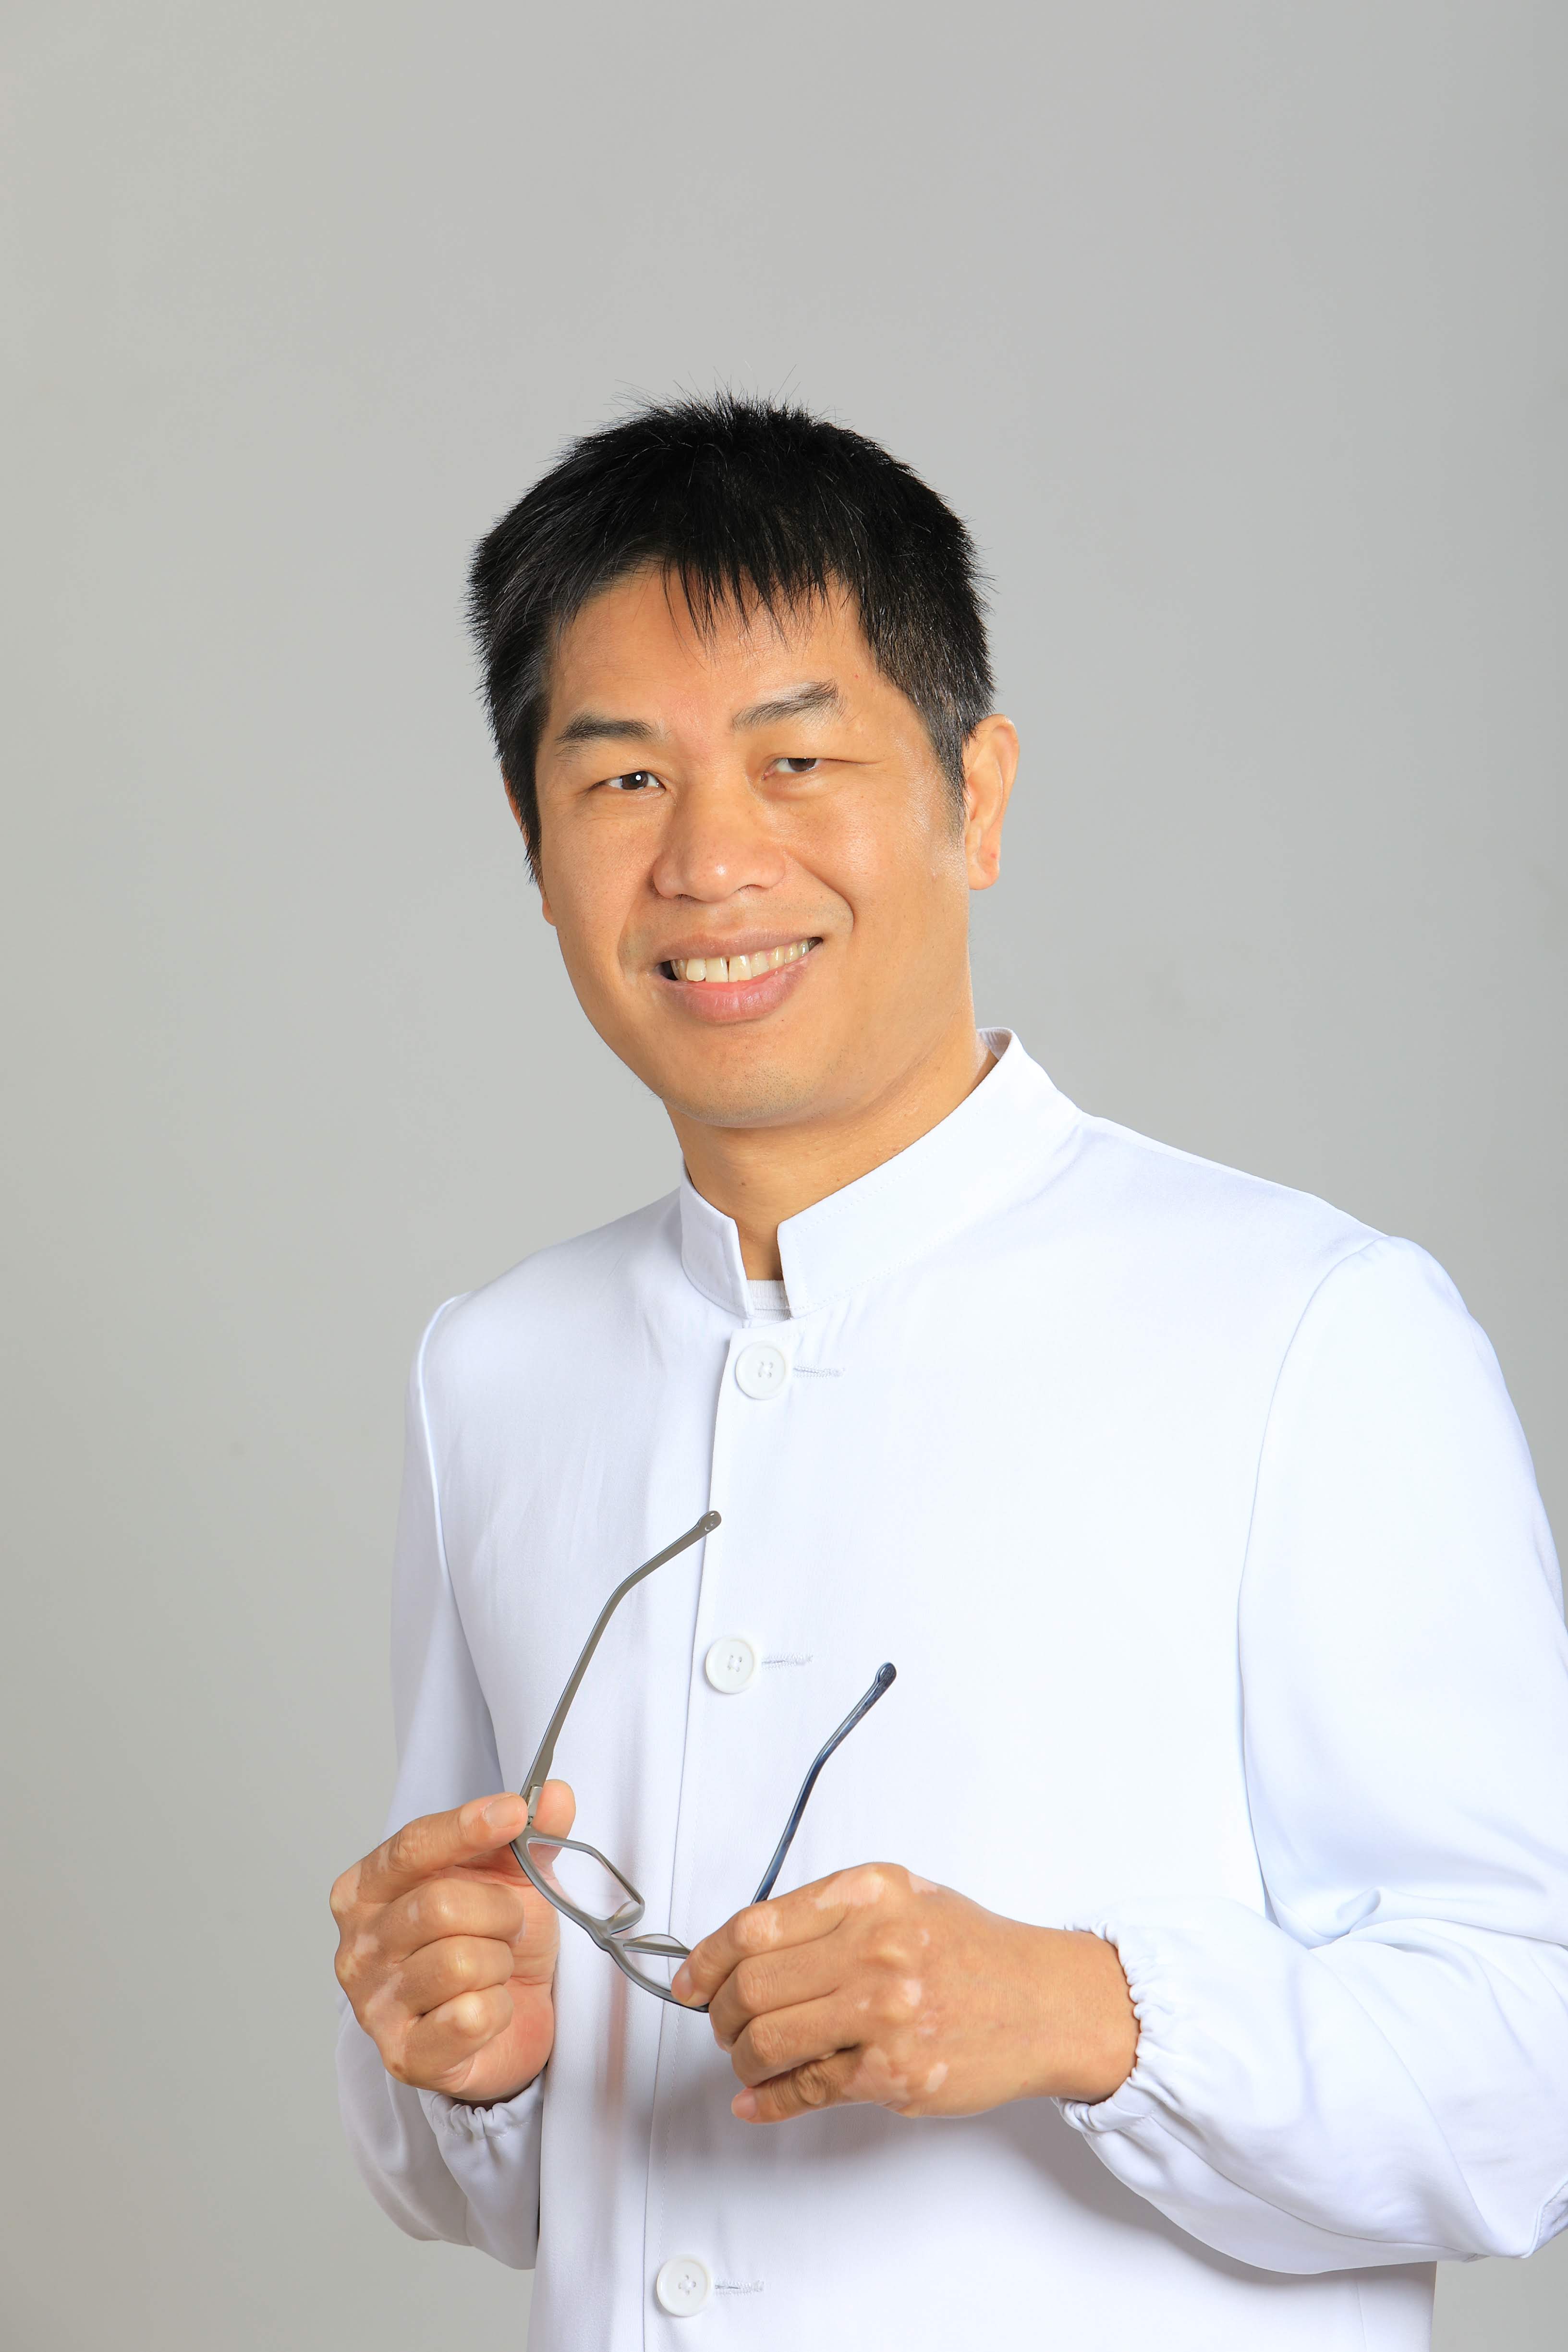 Dr. Leo Chen